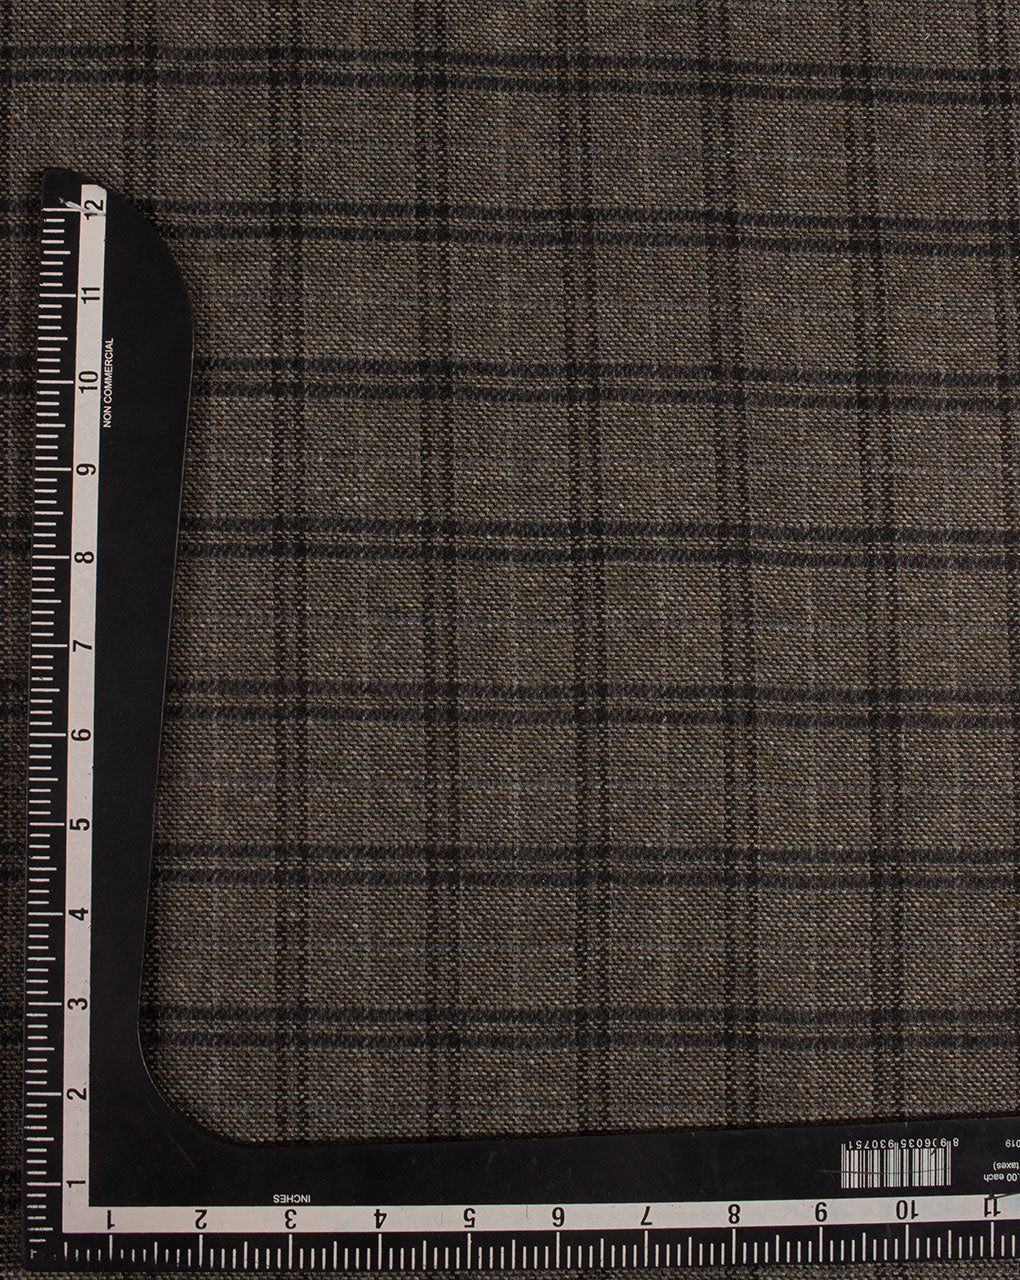 Woolen Tweed Fabric - Fabriclore.com